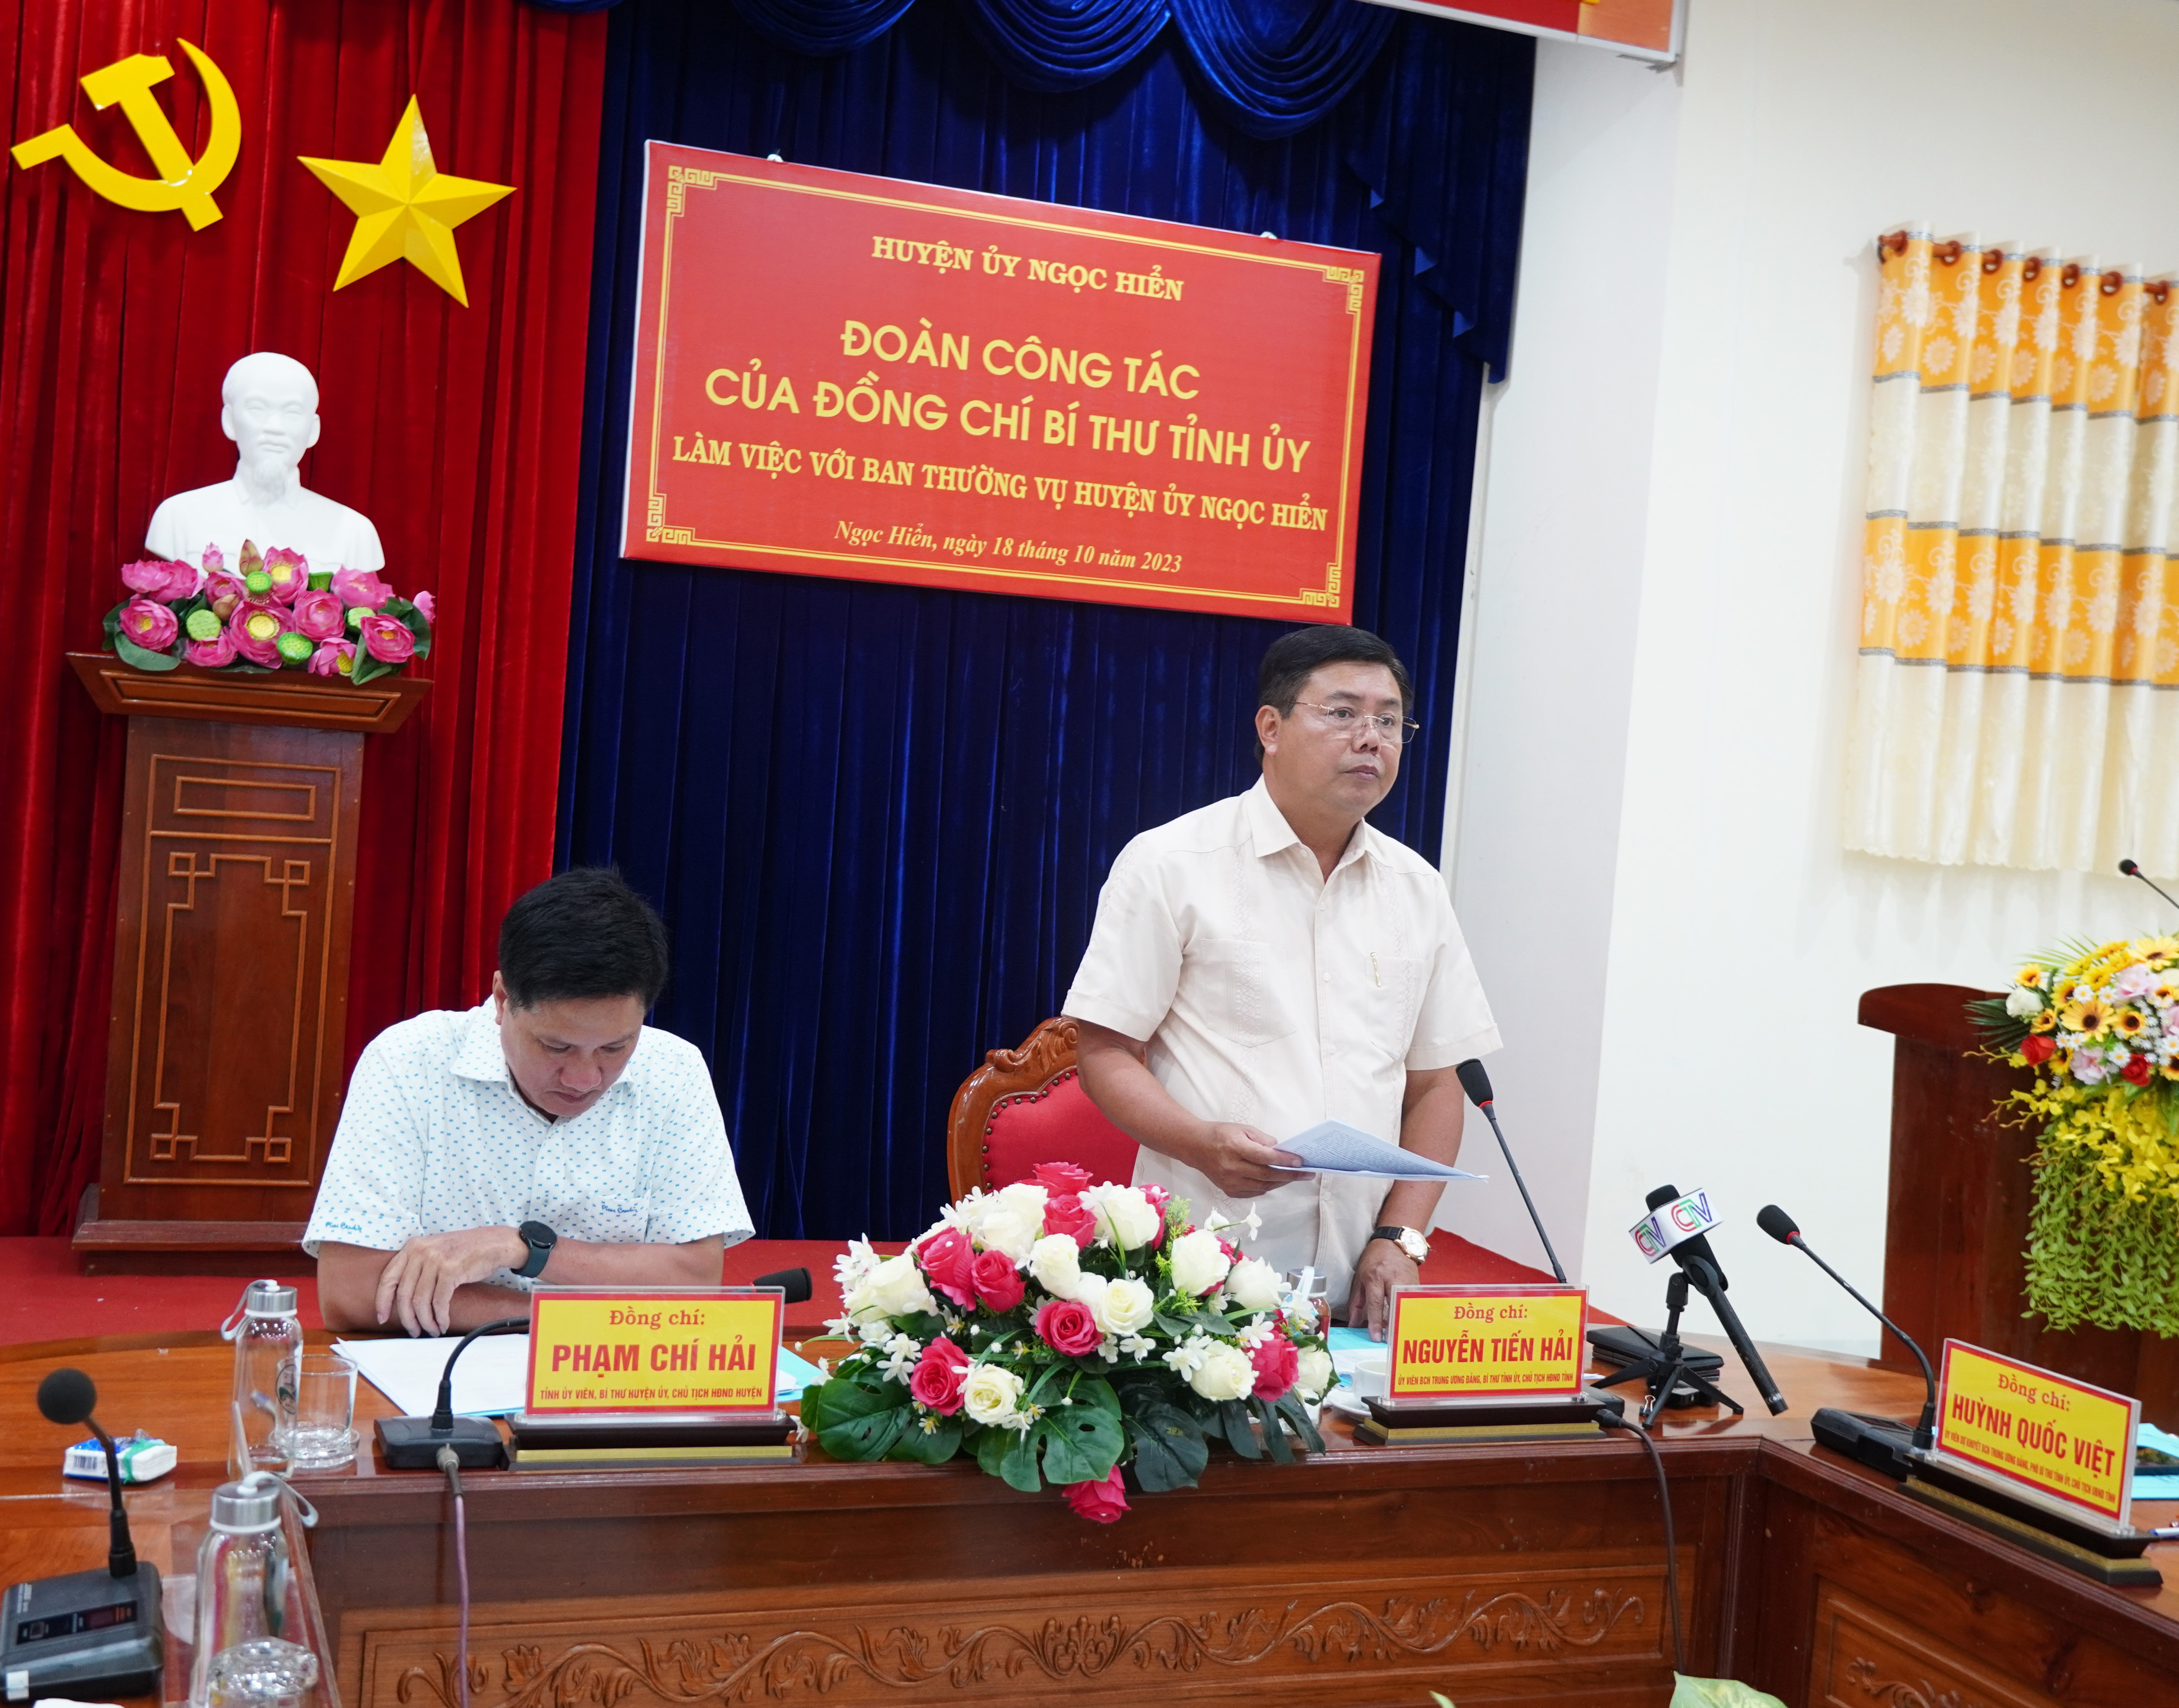 Đồng chí Bí thư Tỉnh ủy Nguyễn Tiến Hải phát biểu chỉ đạo kết thúc buổi làm việc.